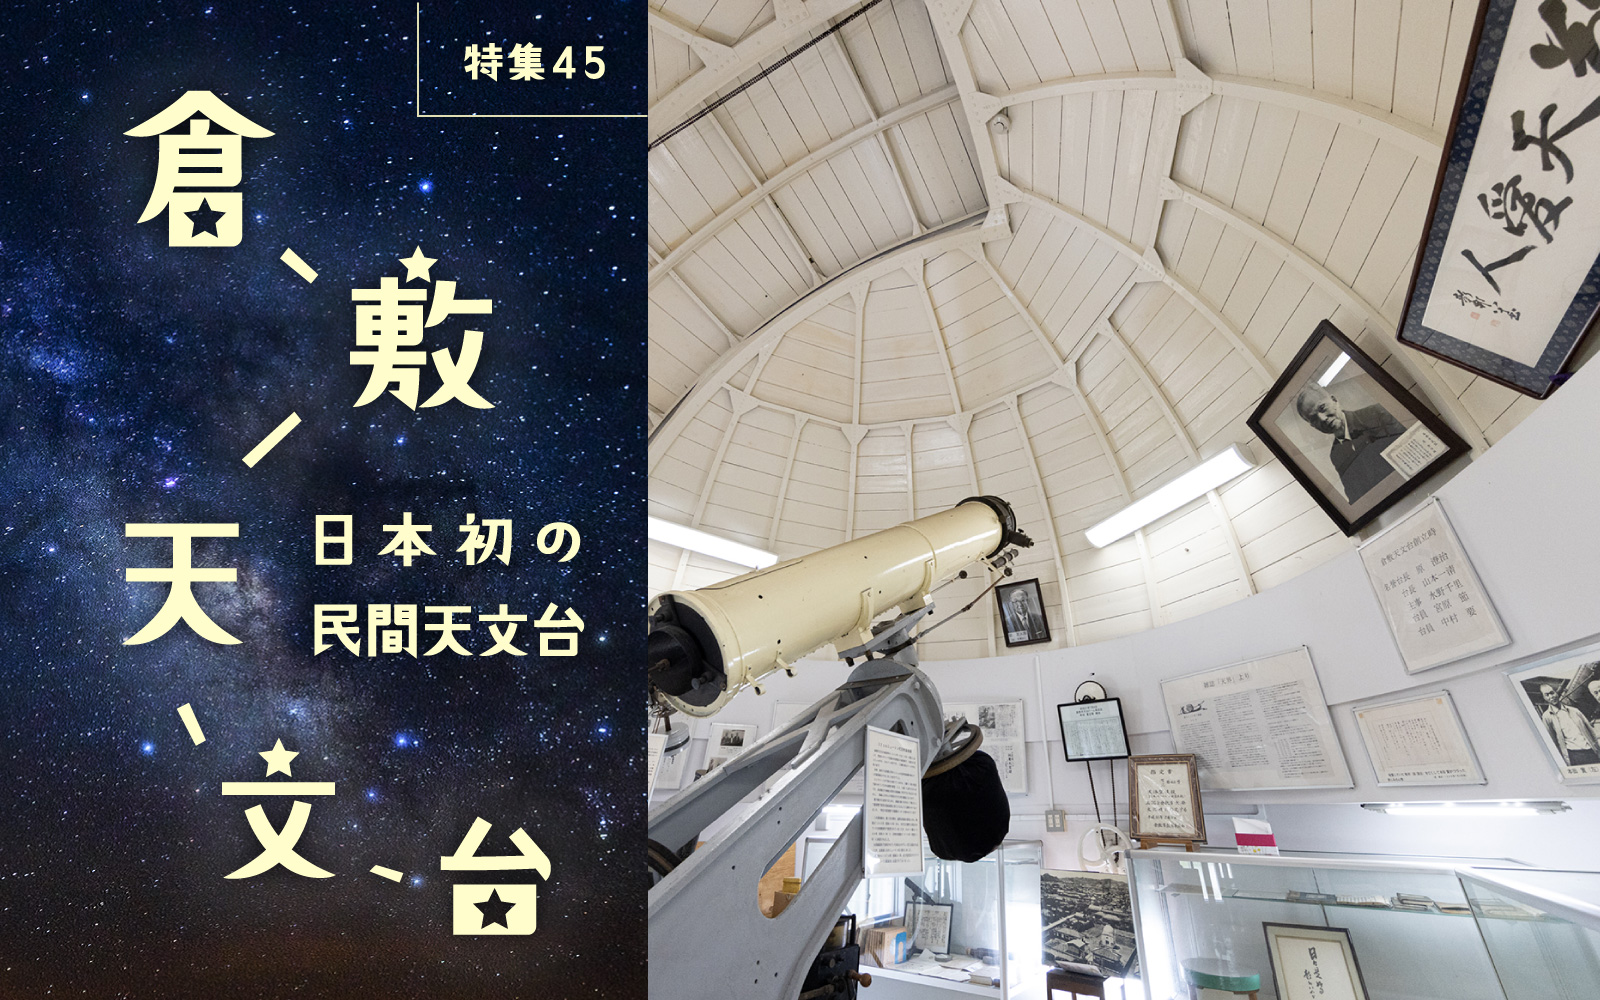 特集45 日本初の民間天文台 倉敷天文台 「誰もが利用できる天文台を」と設立された日本初の民間天文台